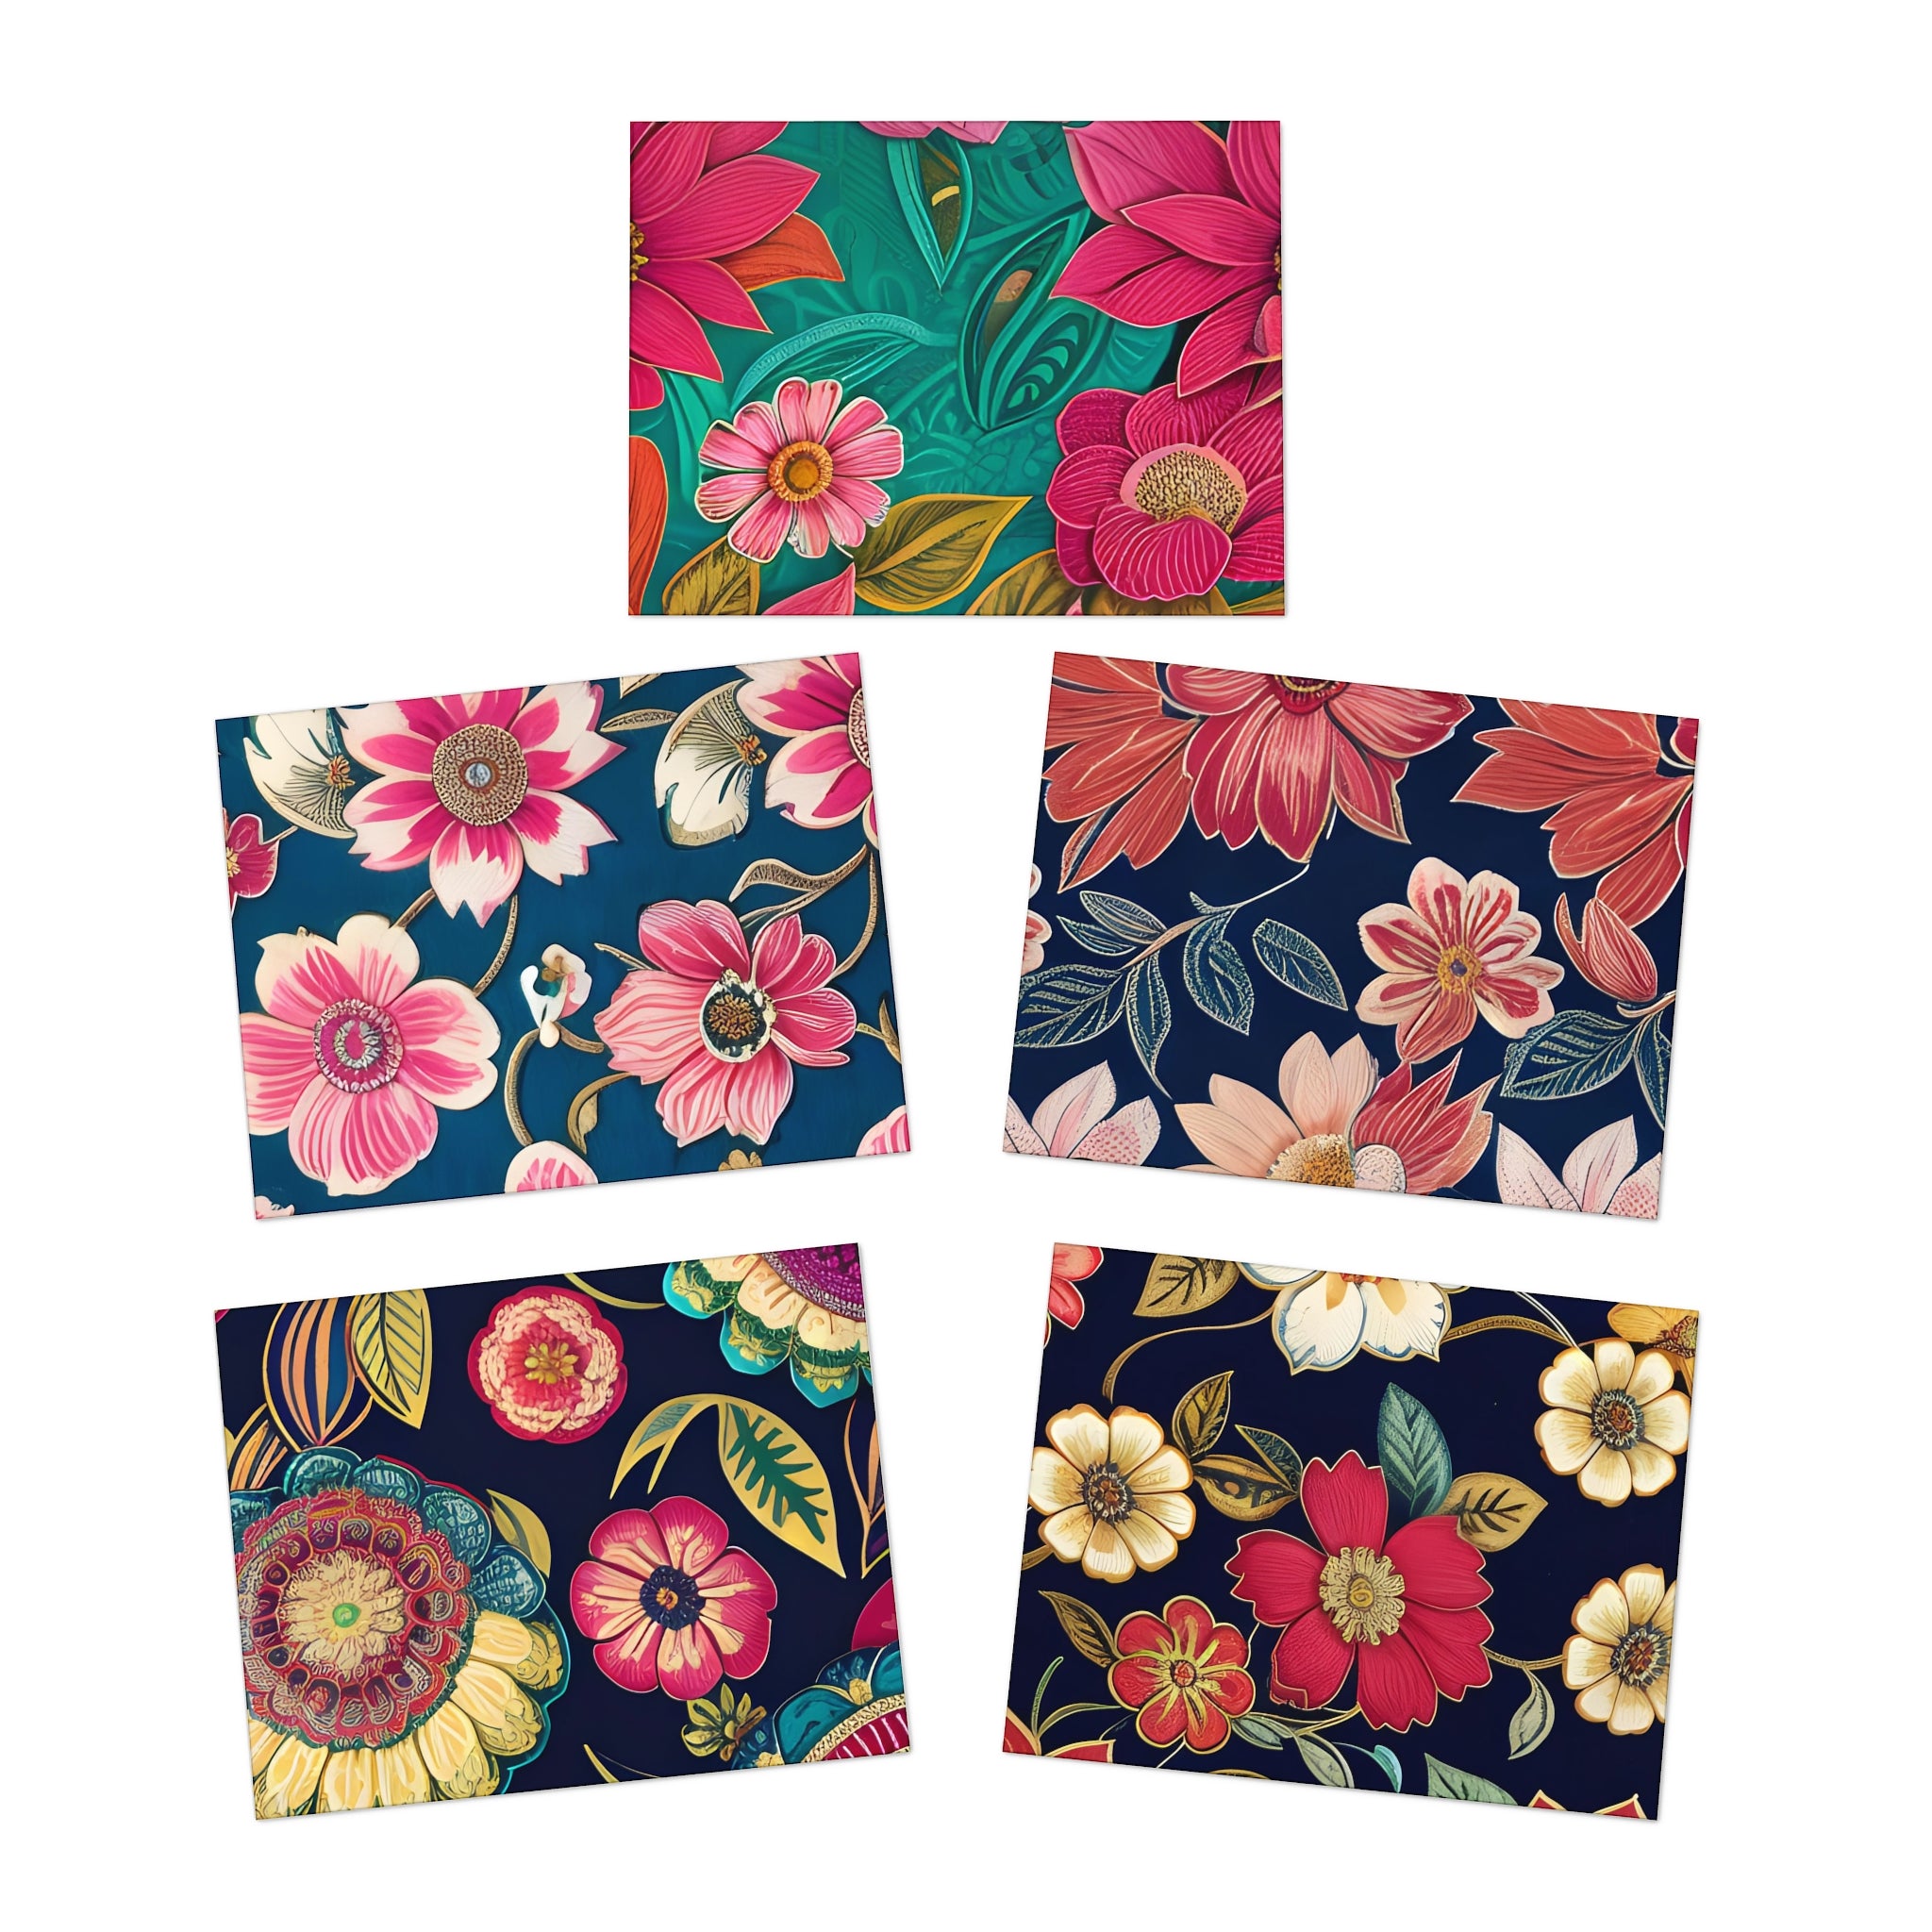 Vintage Floral - Multi-Design Greeting Cards (5-Pack)